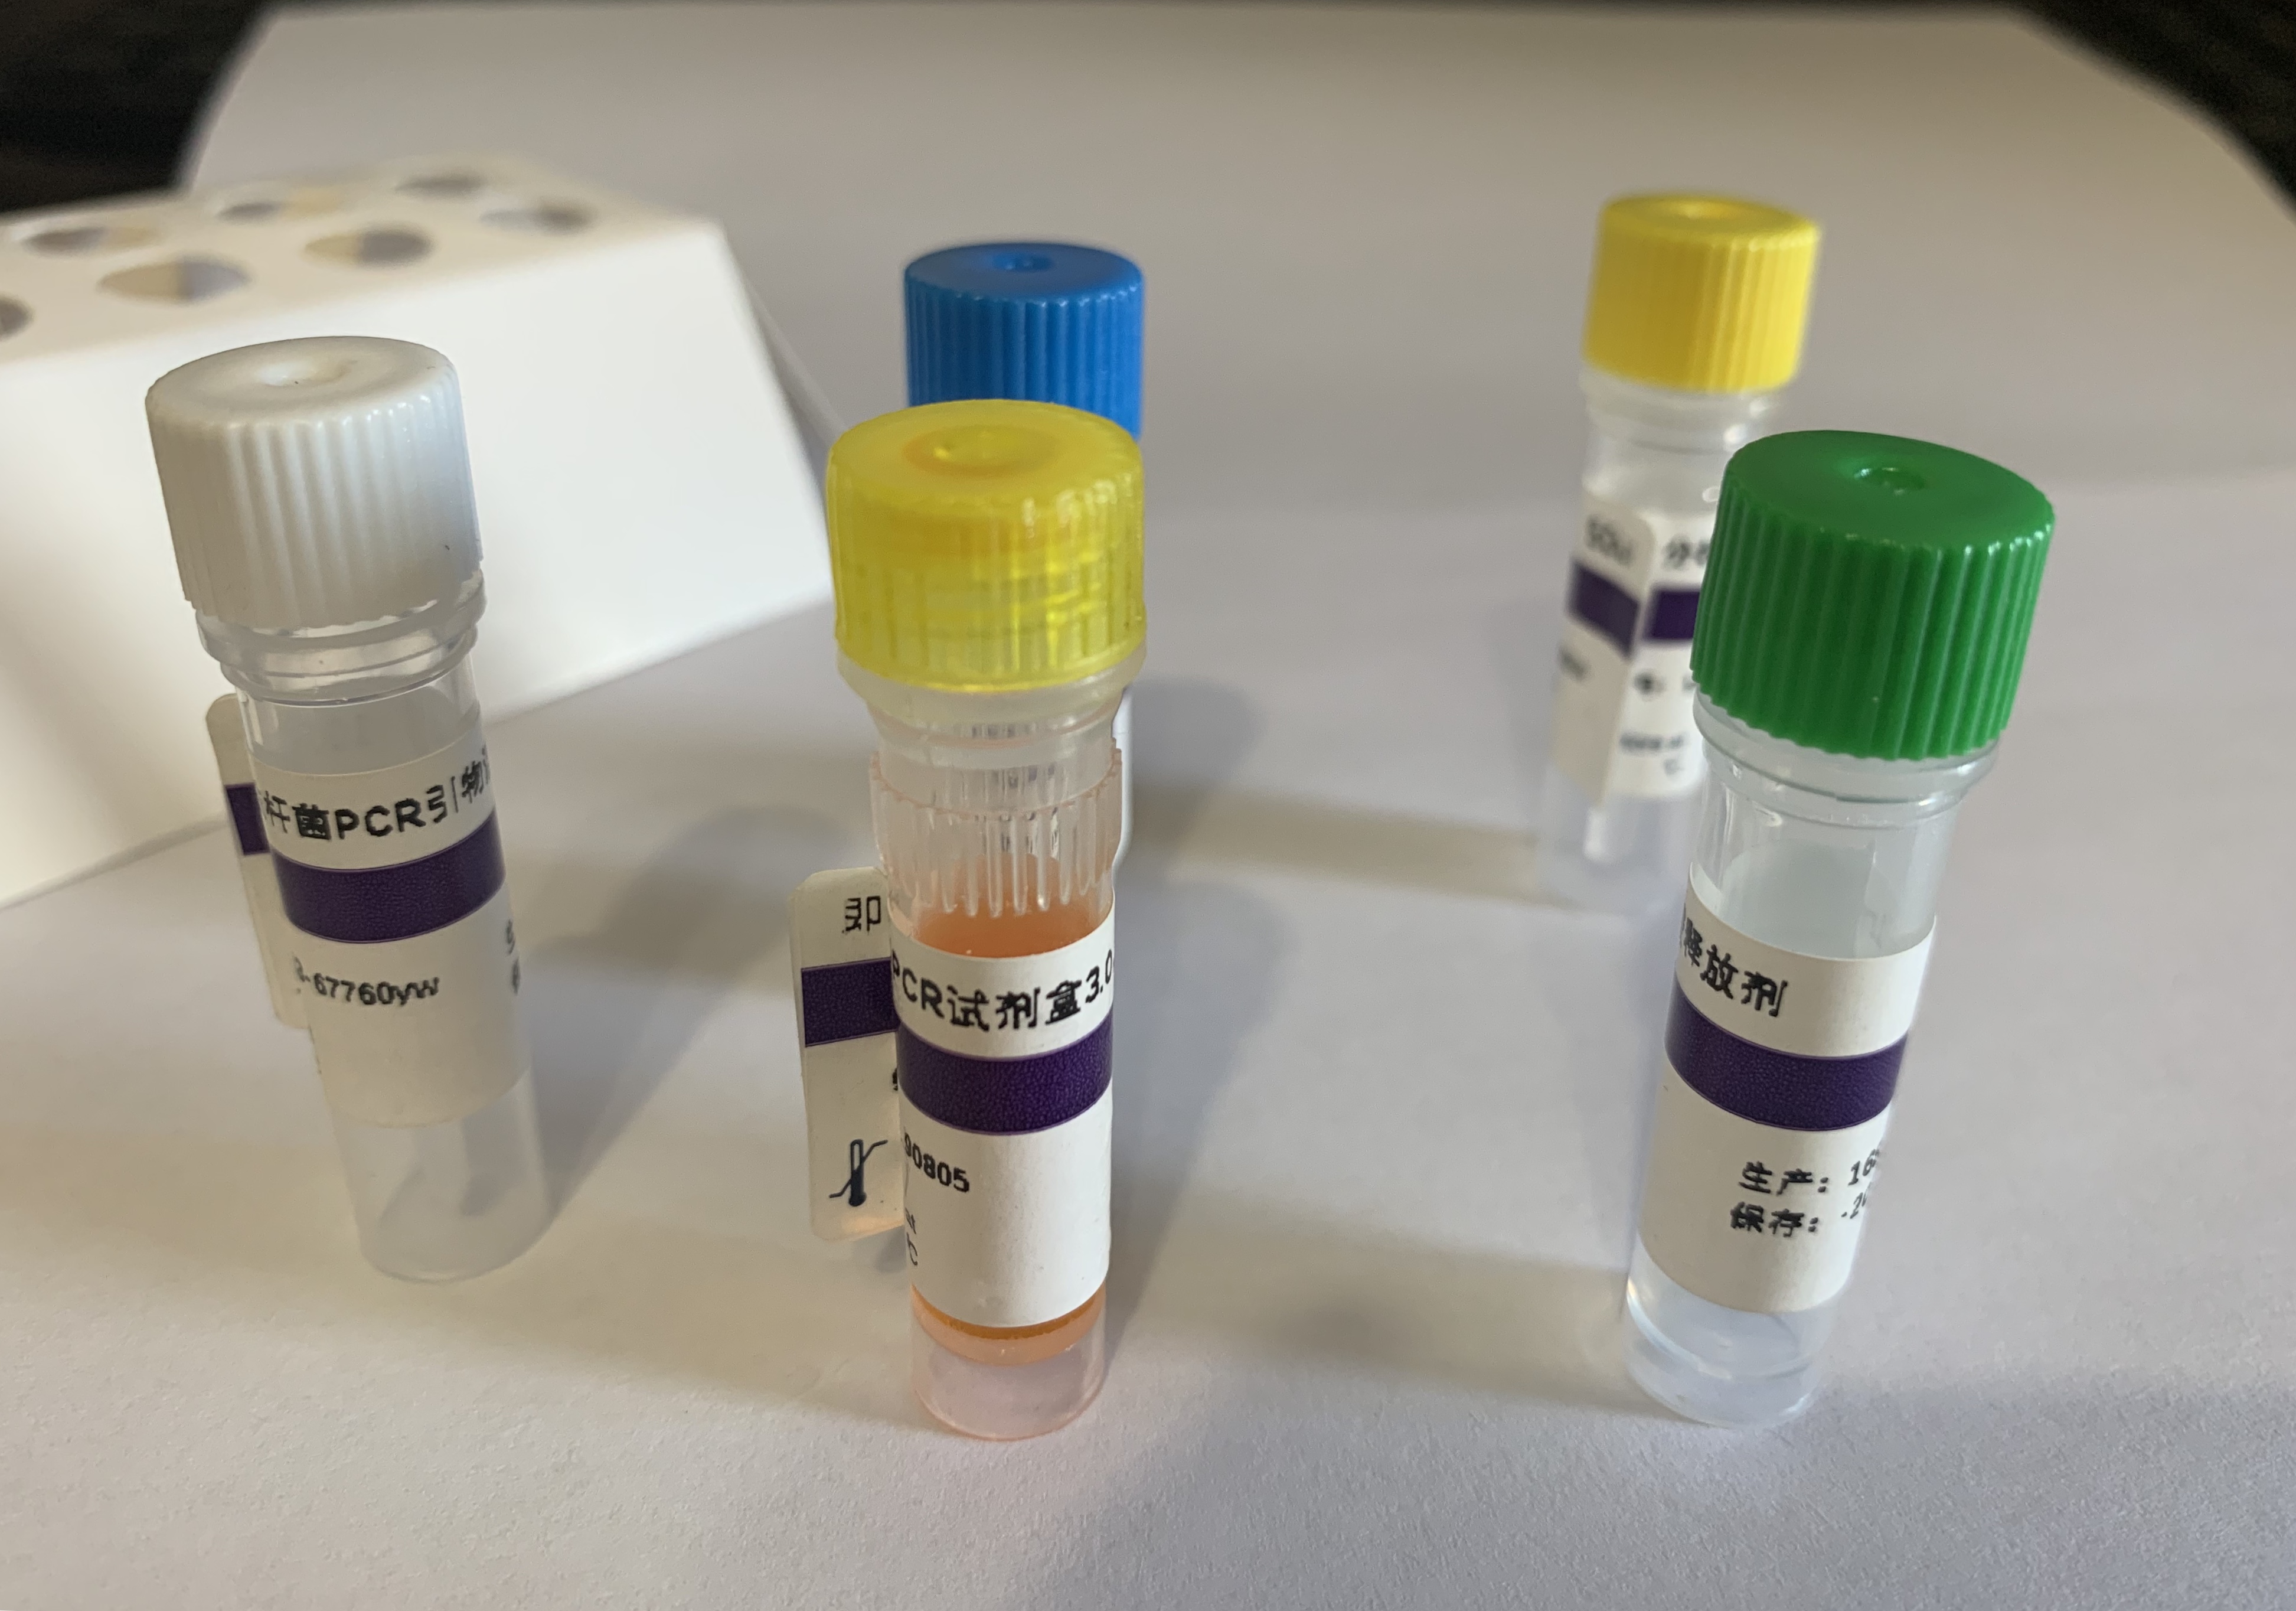 弗格森艾利希体（弗格森埃立克体）探针法荧光定量PCR试剂盒